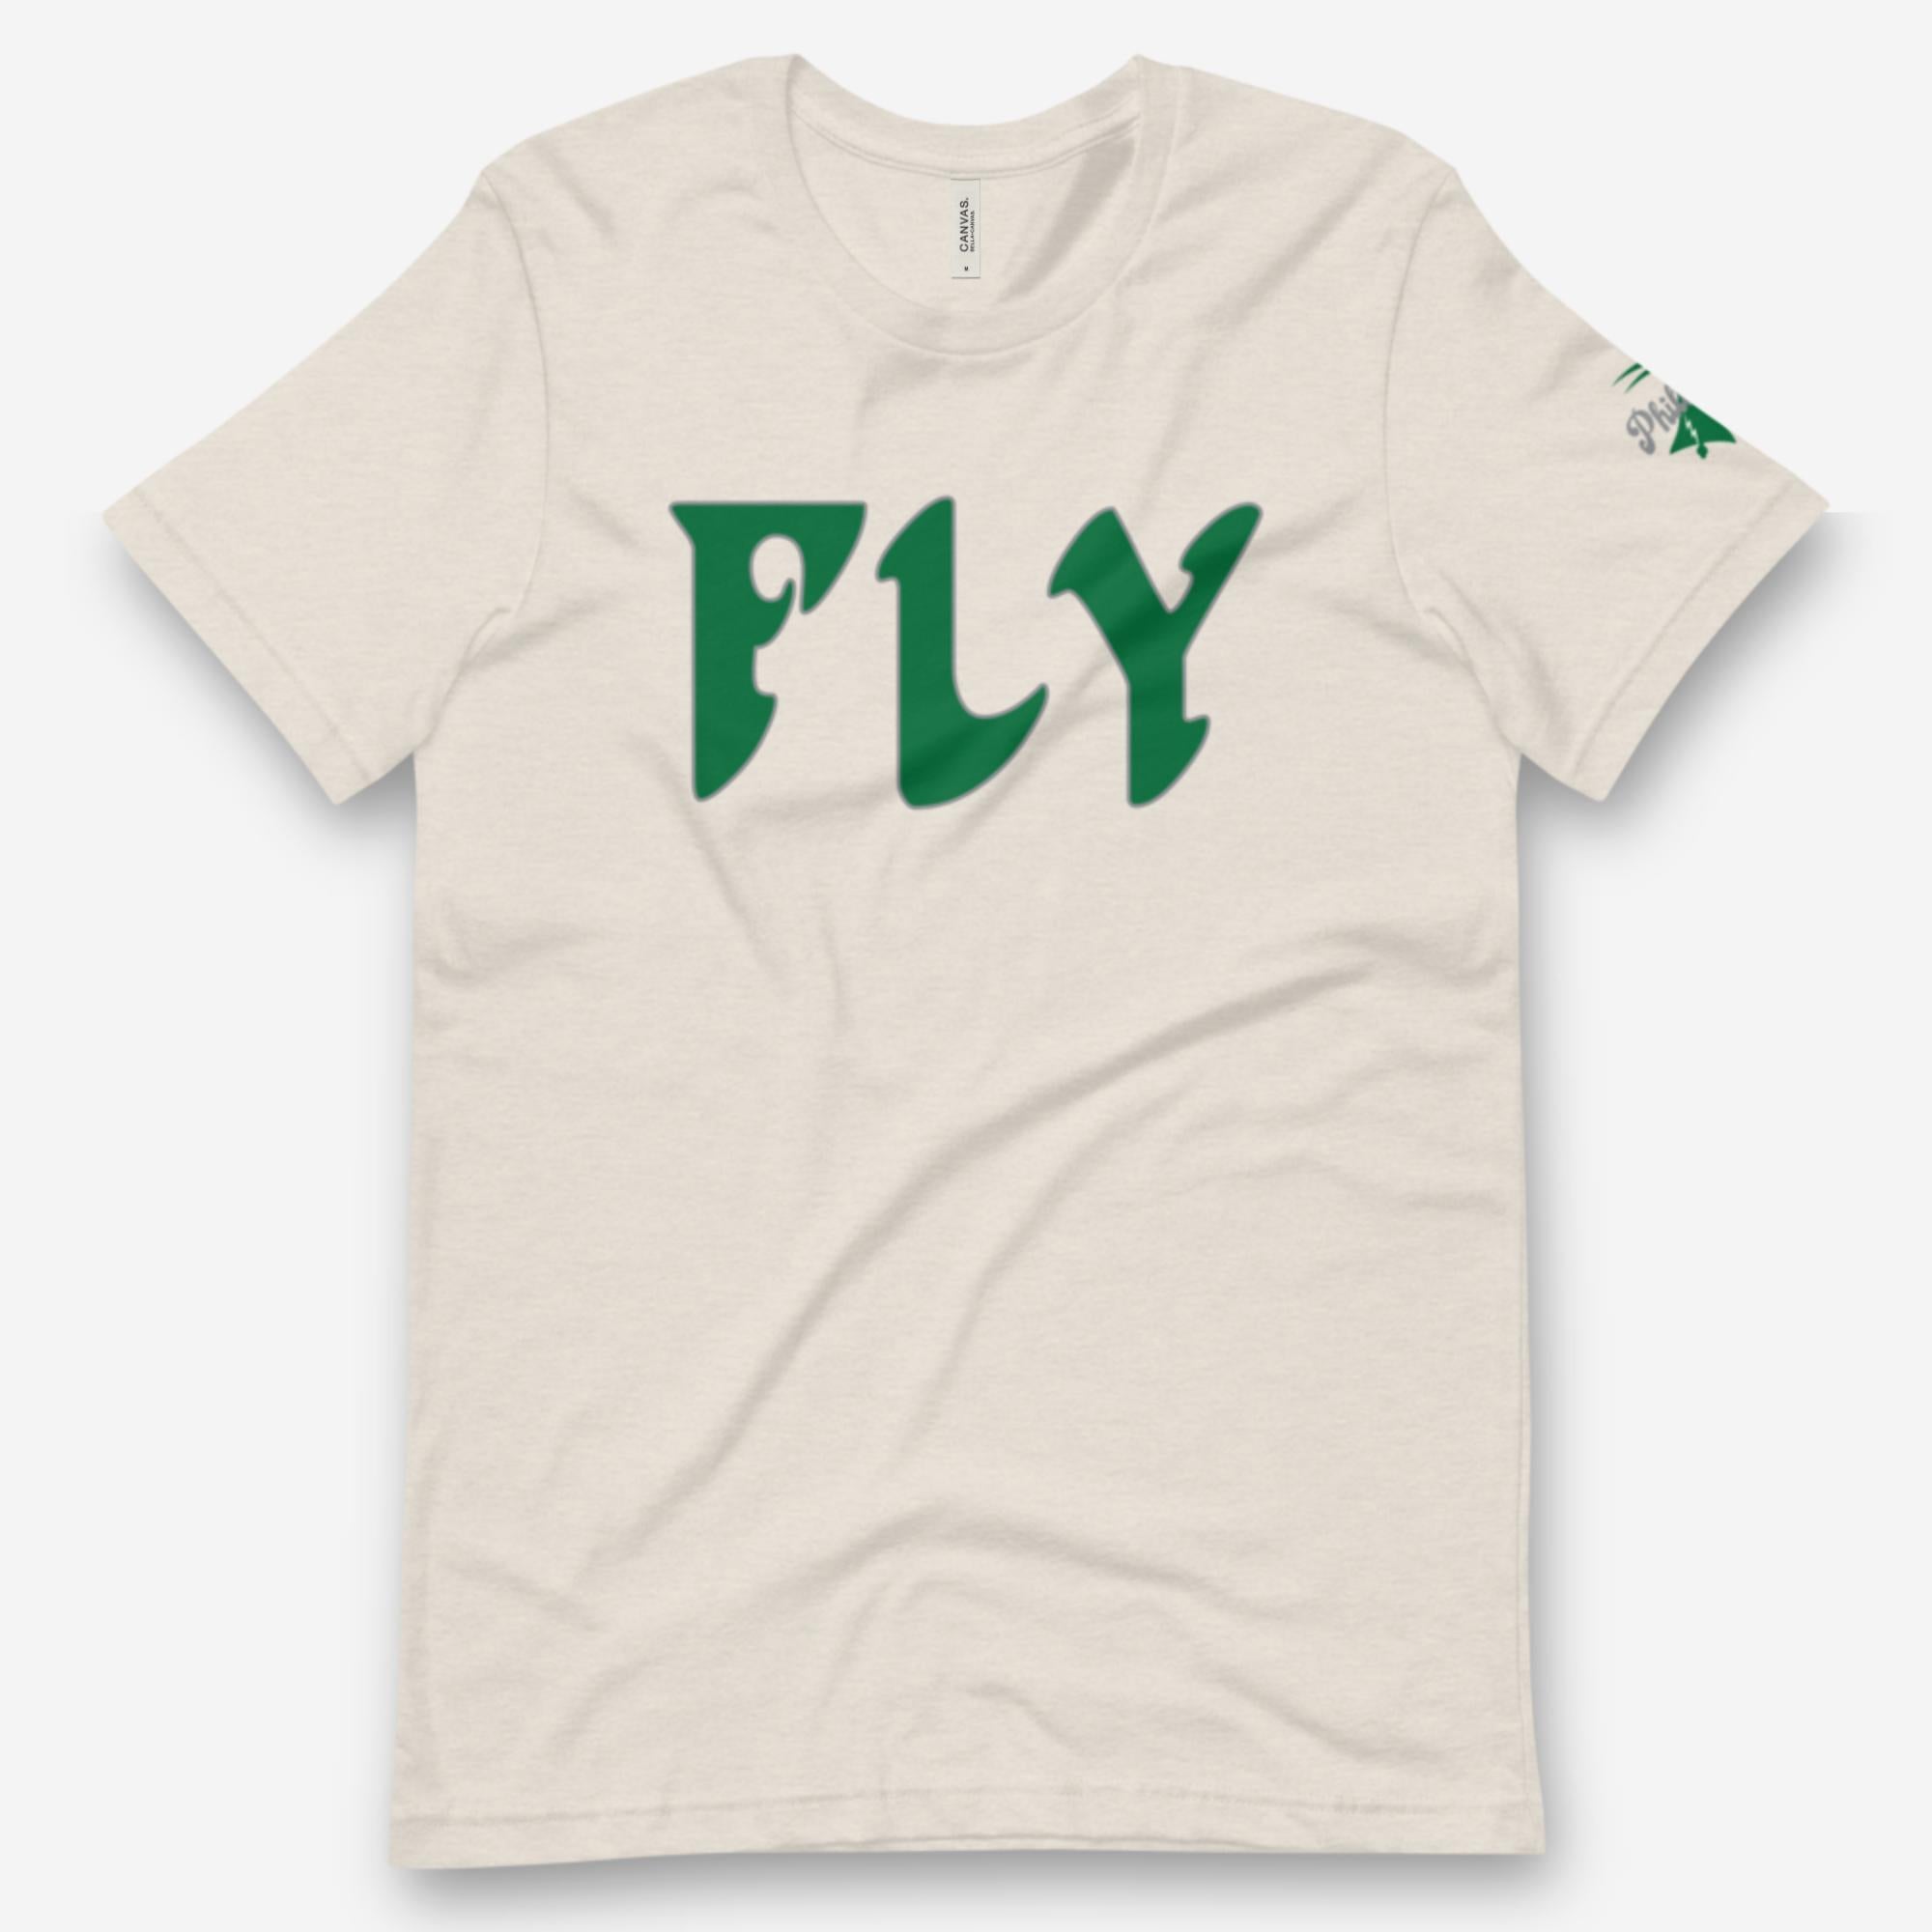 "FLY" Tee